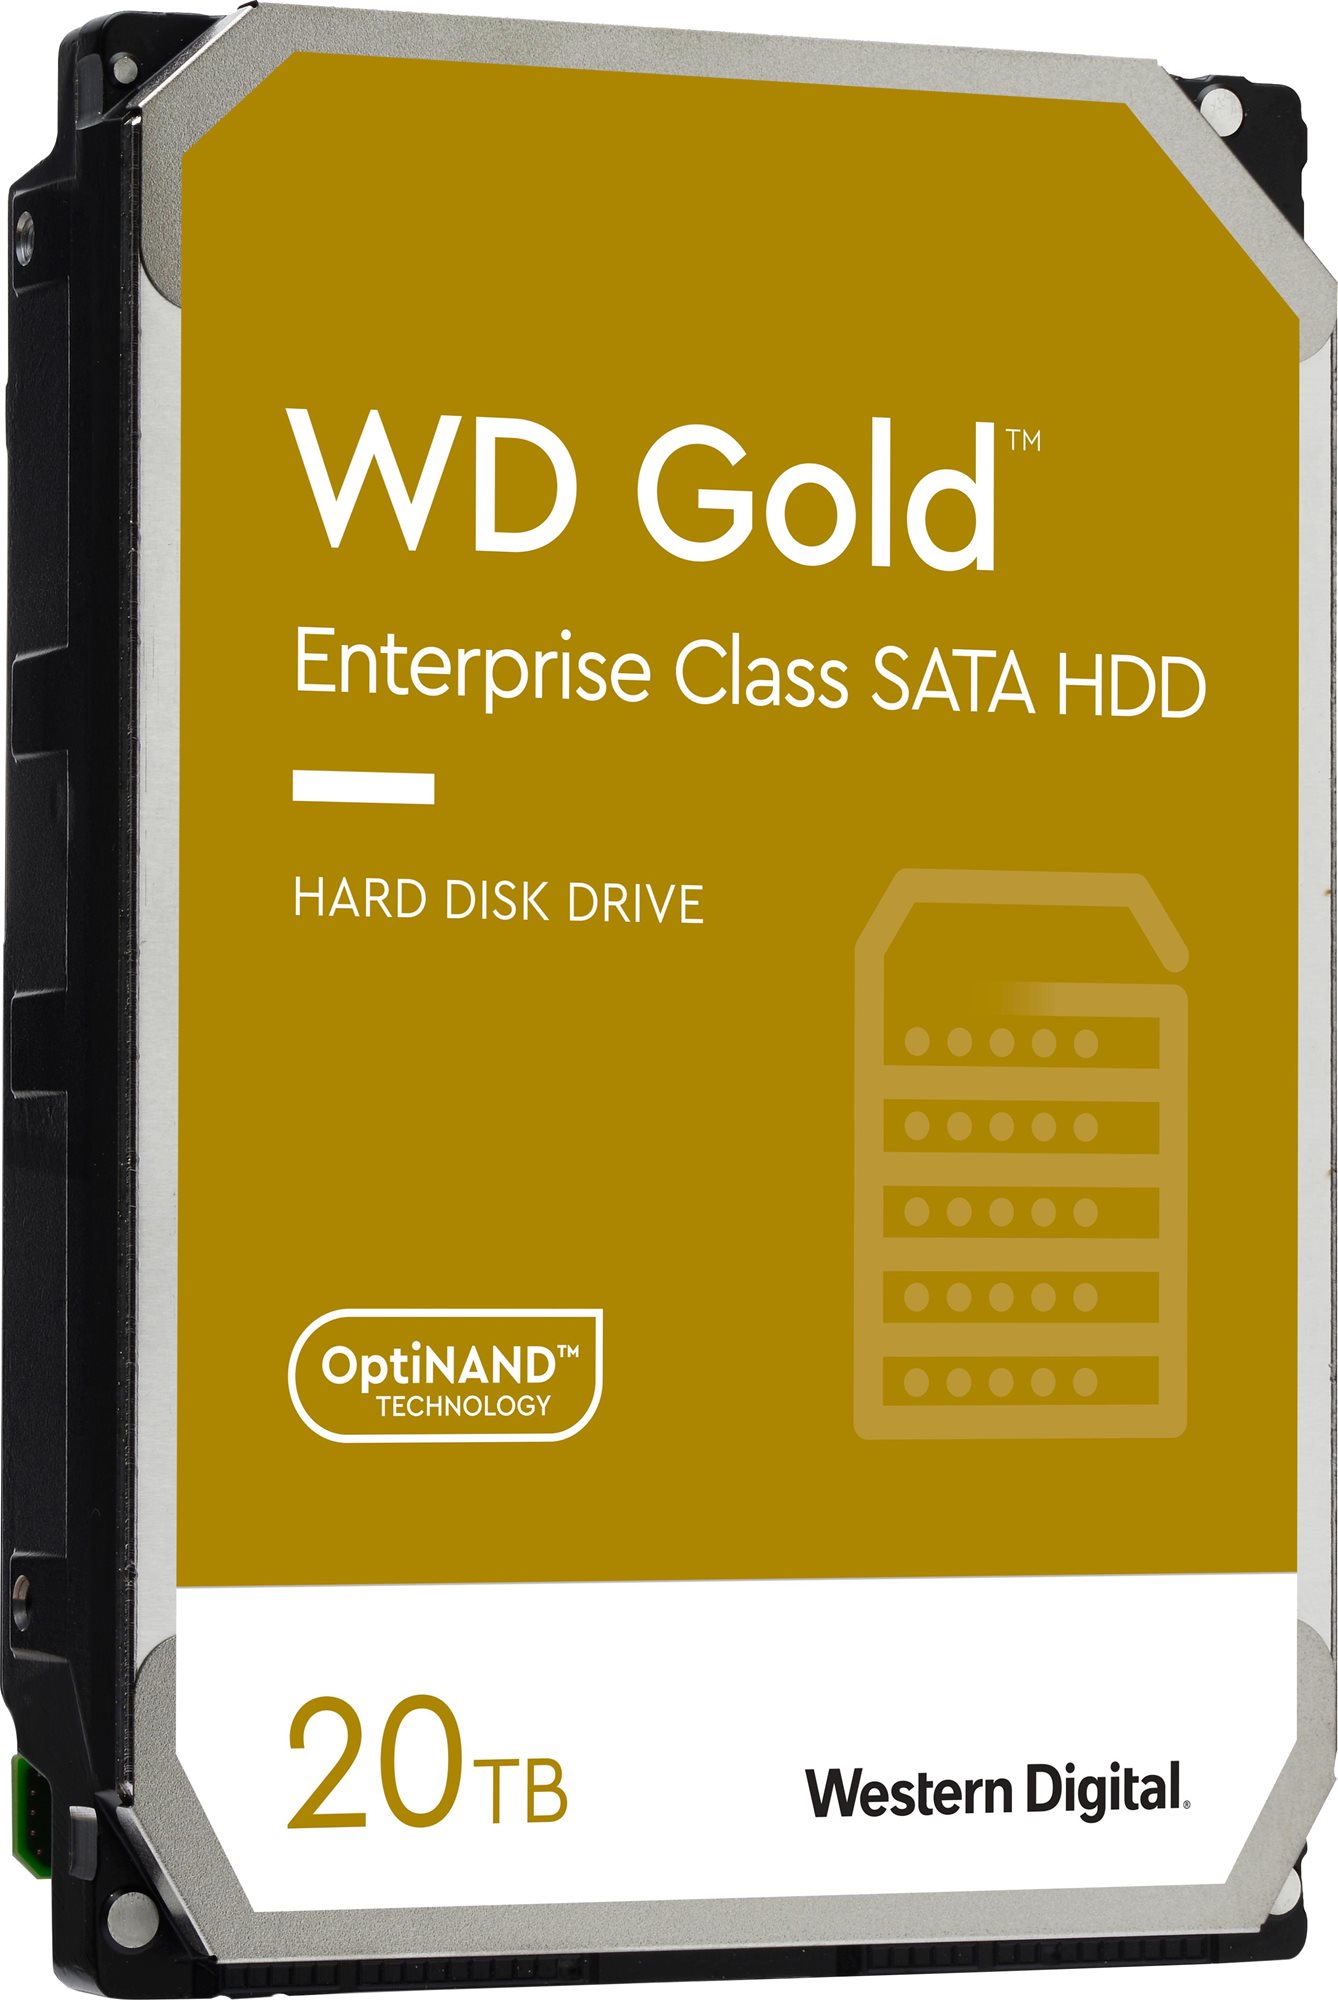 Western digital wd gold 20tb